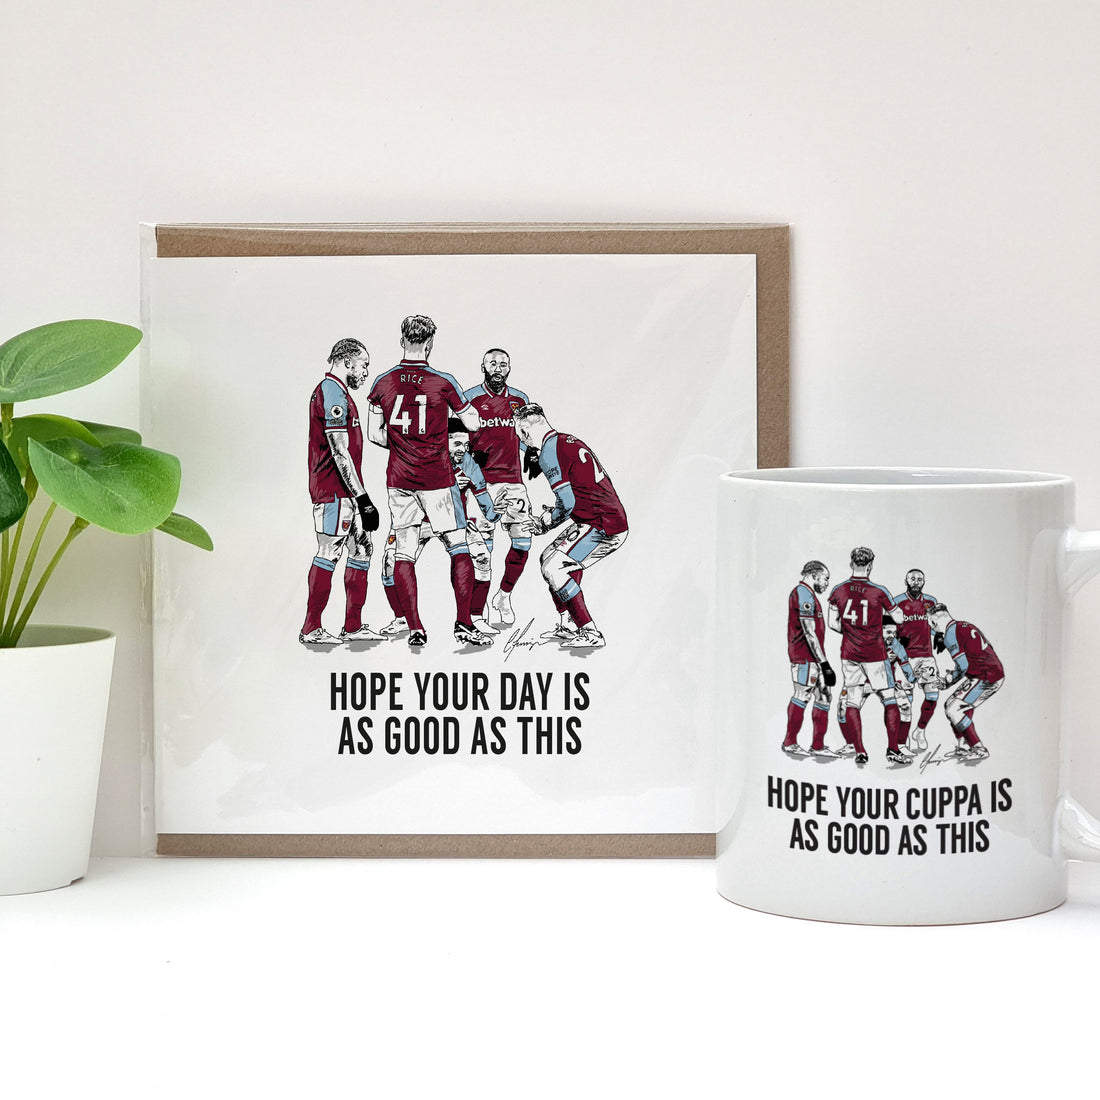 West Ham fan - Football Celebration Card & Gift